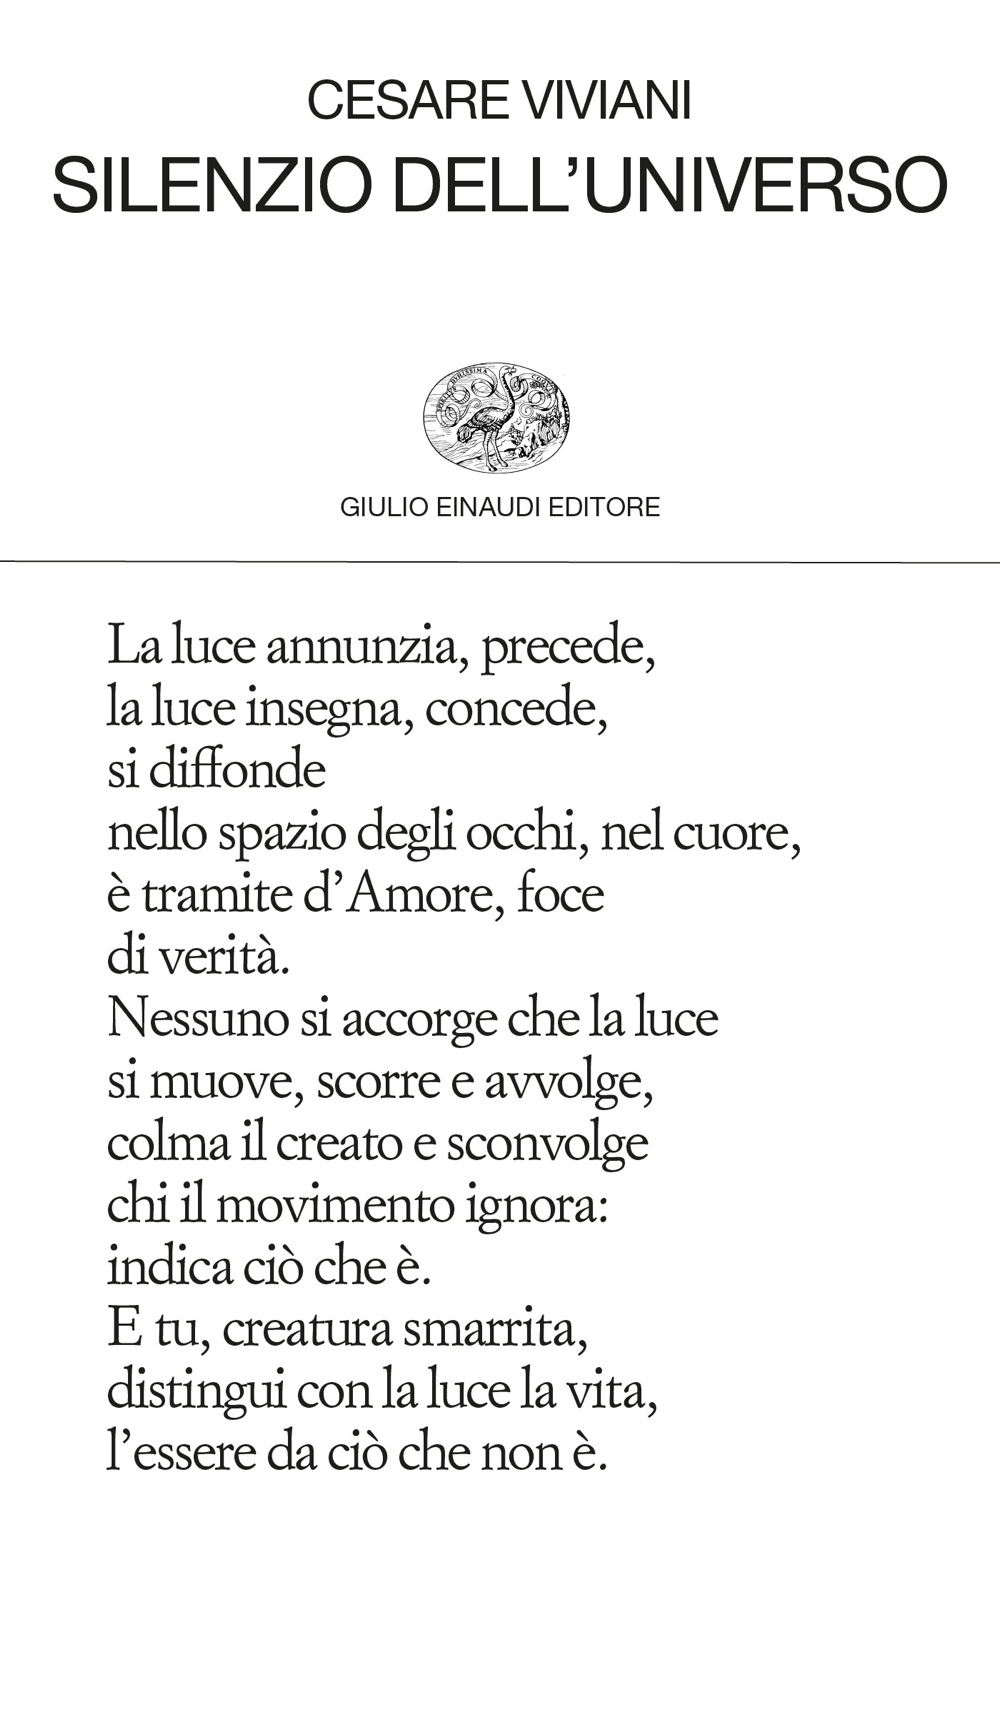 Silenzio Dell Universo Cesare Viviani Giulio Einaudi Editore Collezione Di Poesia